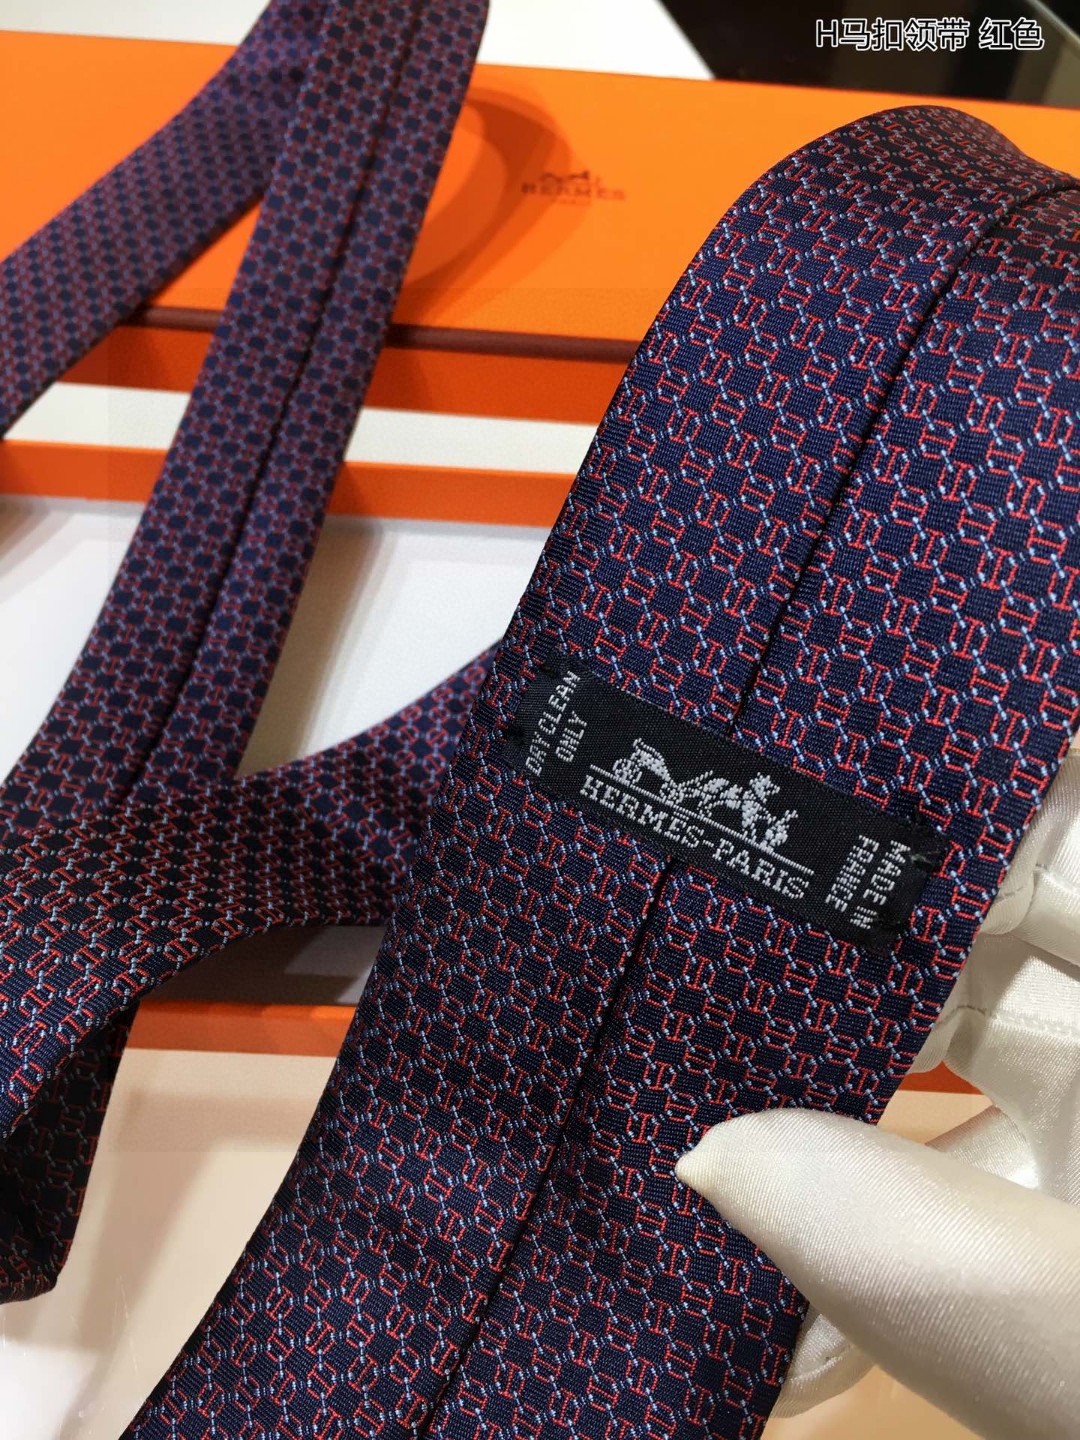 上新男士新款领带系列H马扣领带稀有H家每年都有一千条不同印花的领带面世从最初的多以几何图案表现骑术活动为